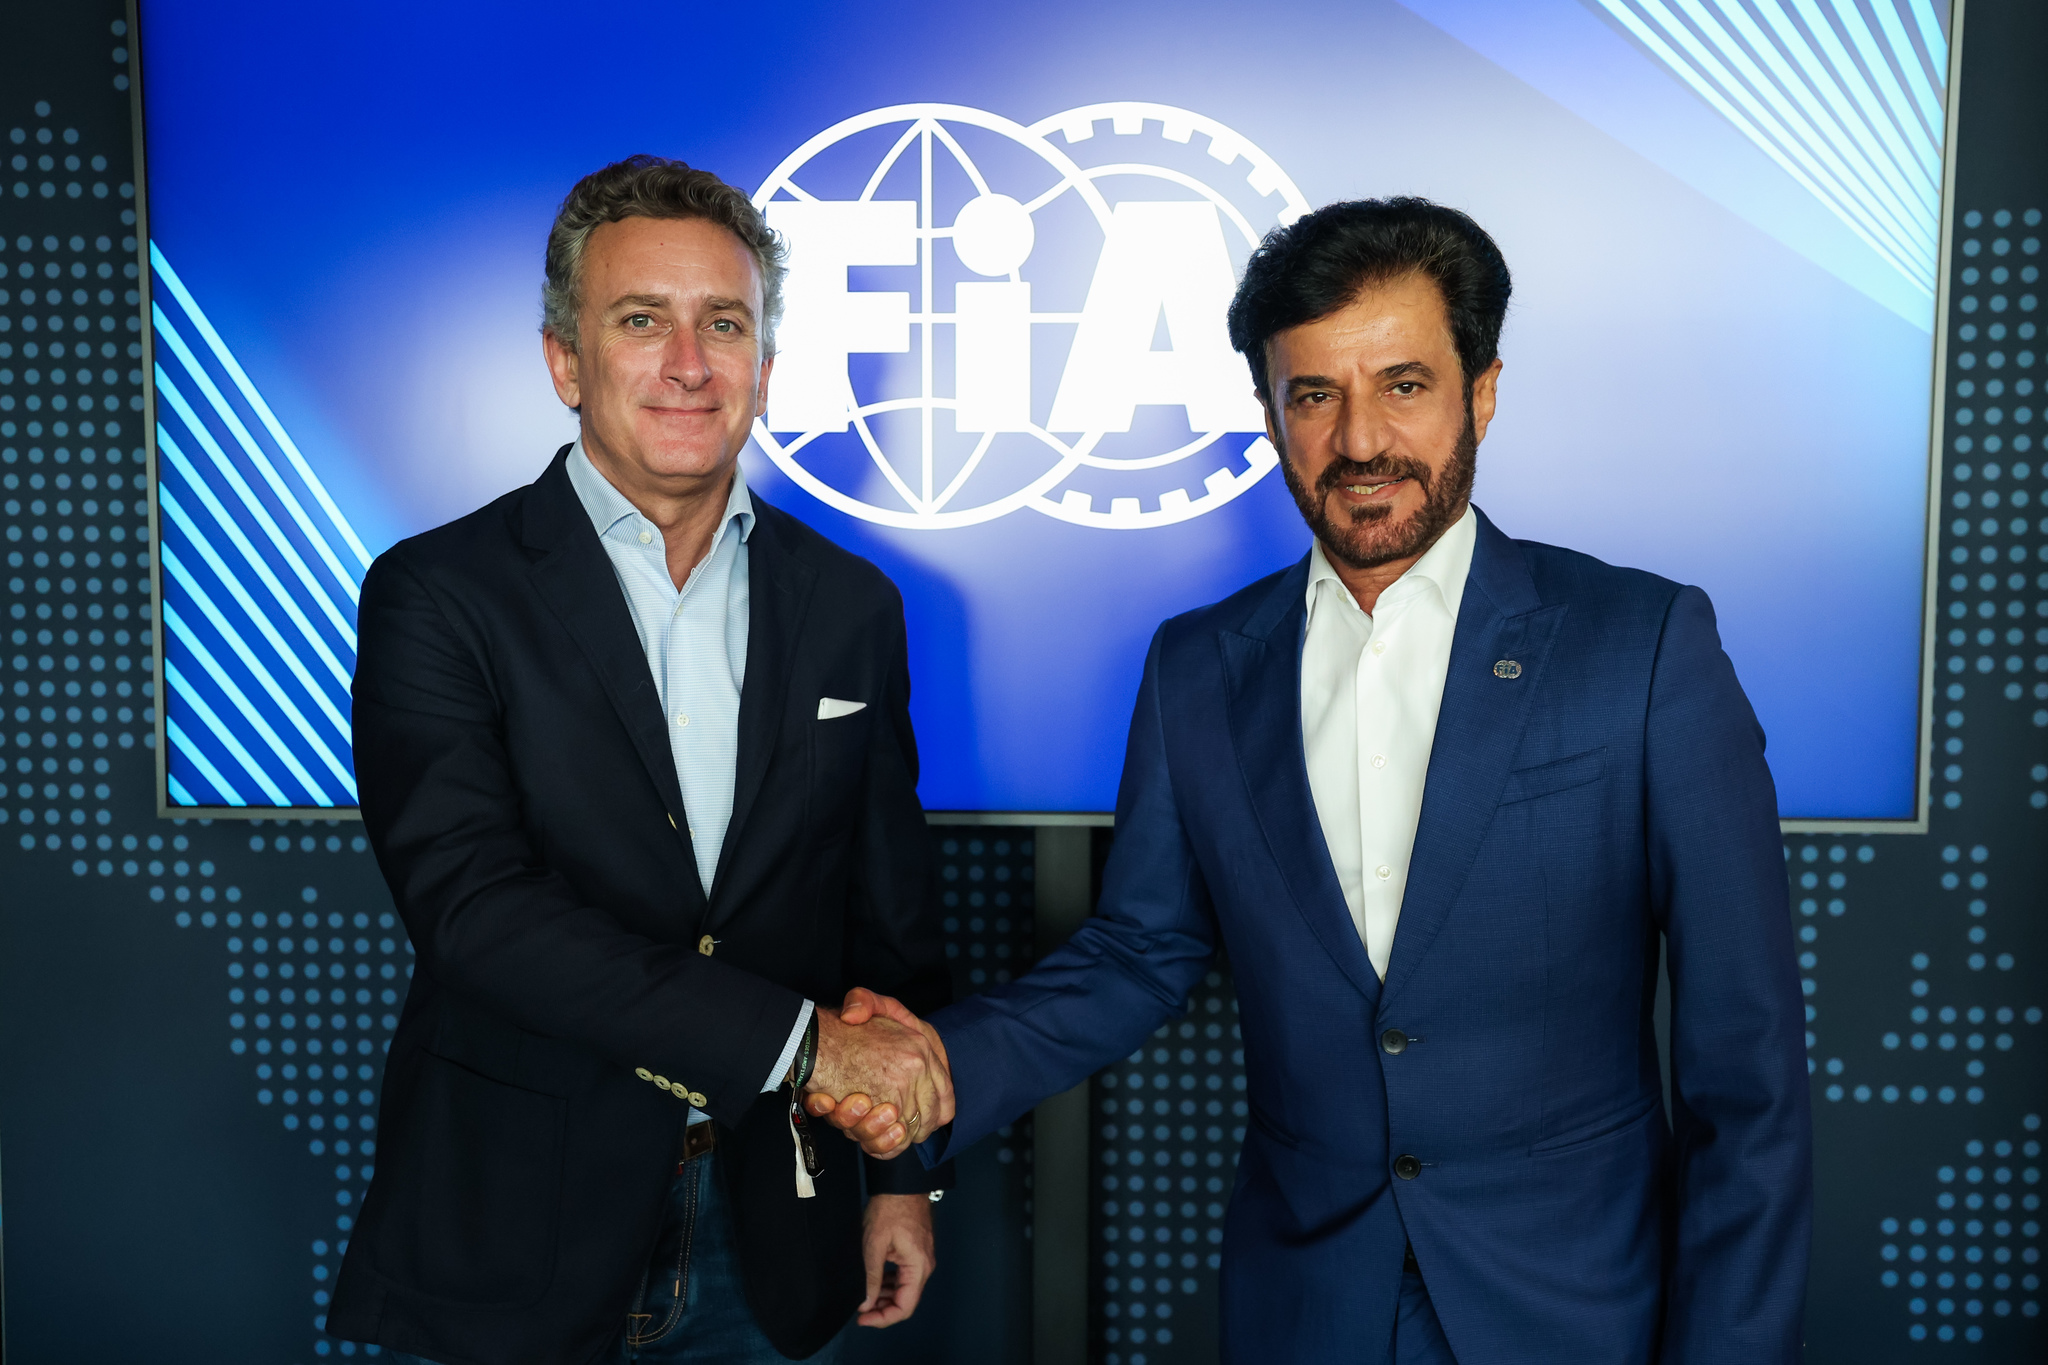 La FIA y el Extreme E caminarán juntos hacia un futuro del hidrógeno.